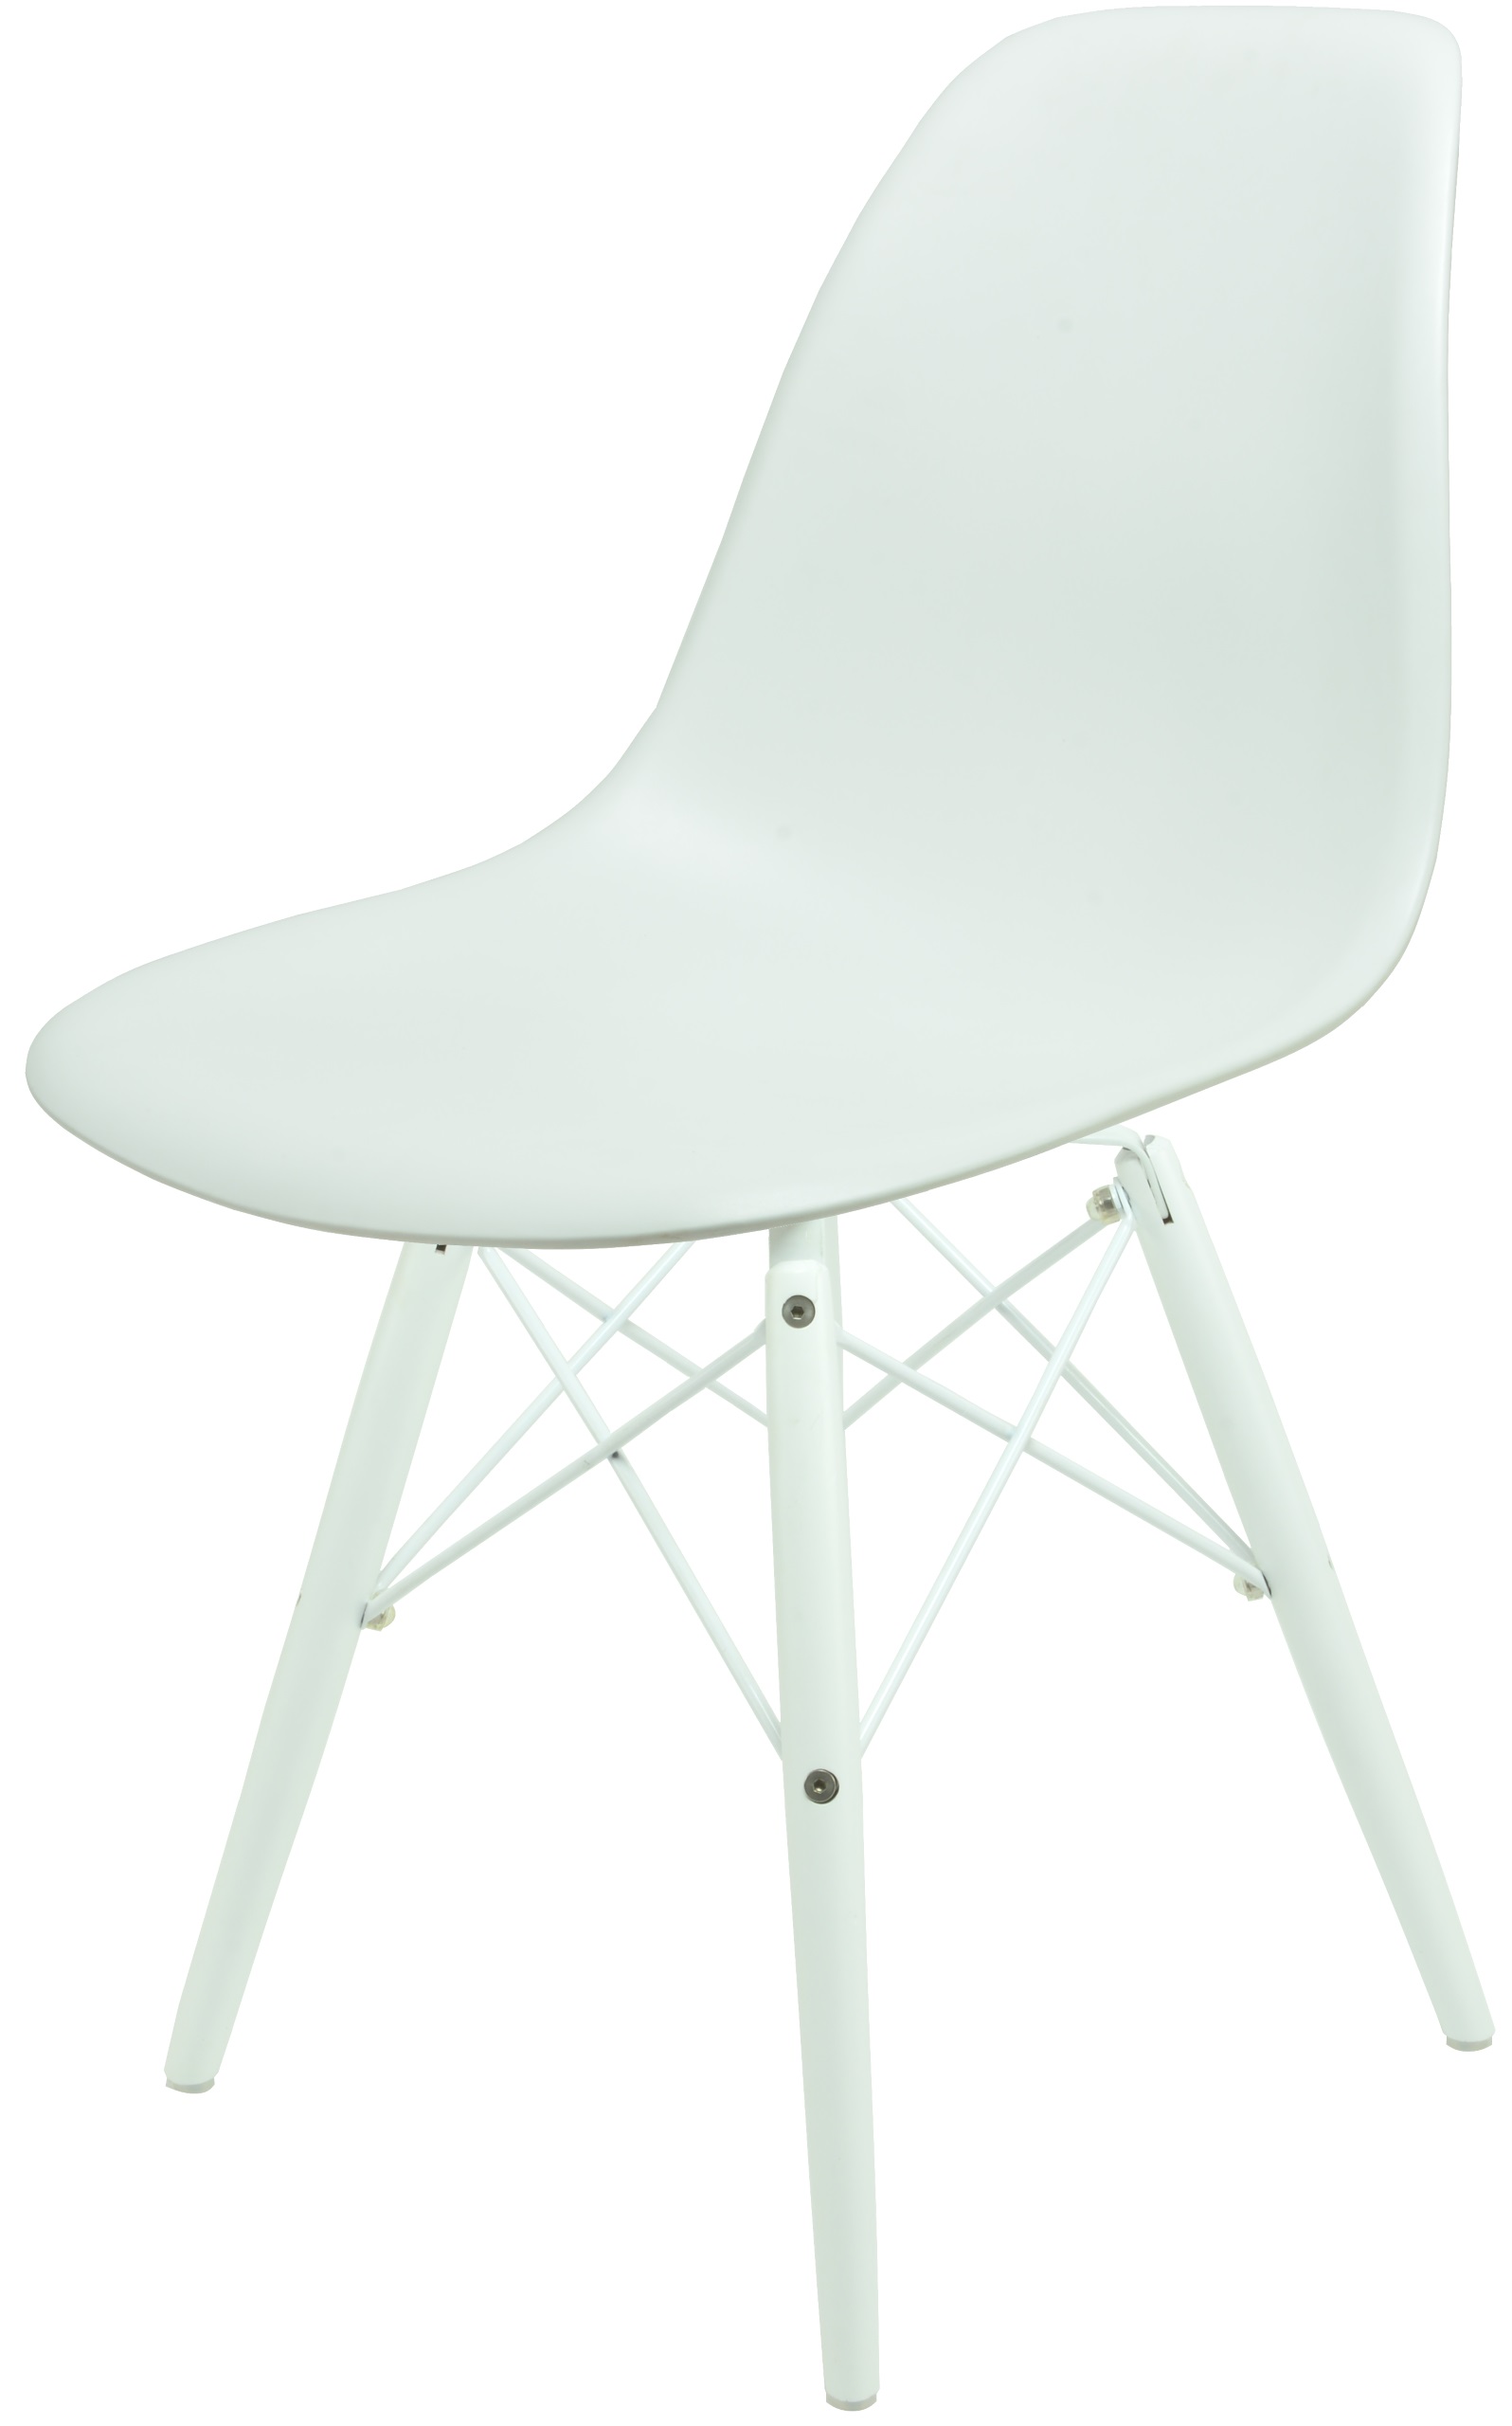 Zdjęcia - Krzesło Milano  Dankor Design Dsw Dsr 42 kol Nogi białe 